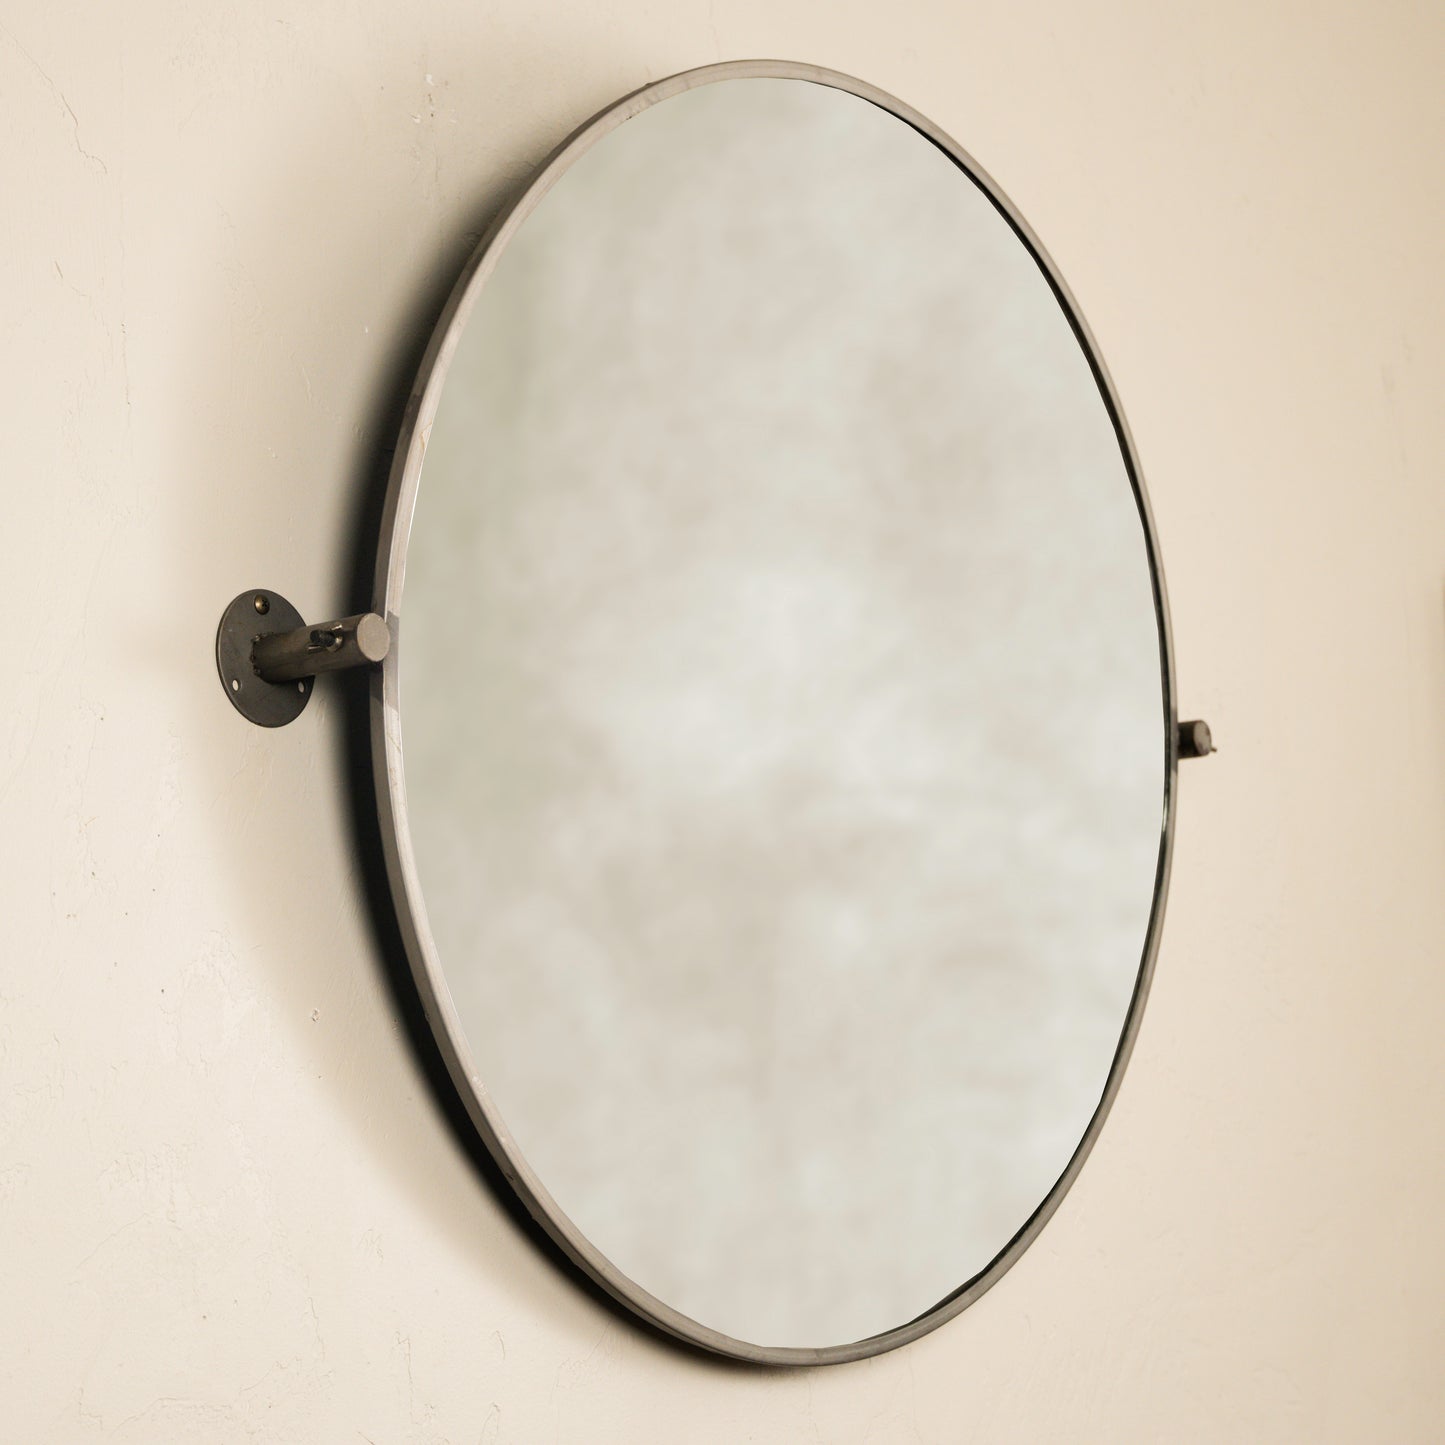 The Gilmer Round Tilt Mirror